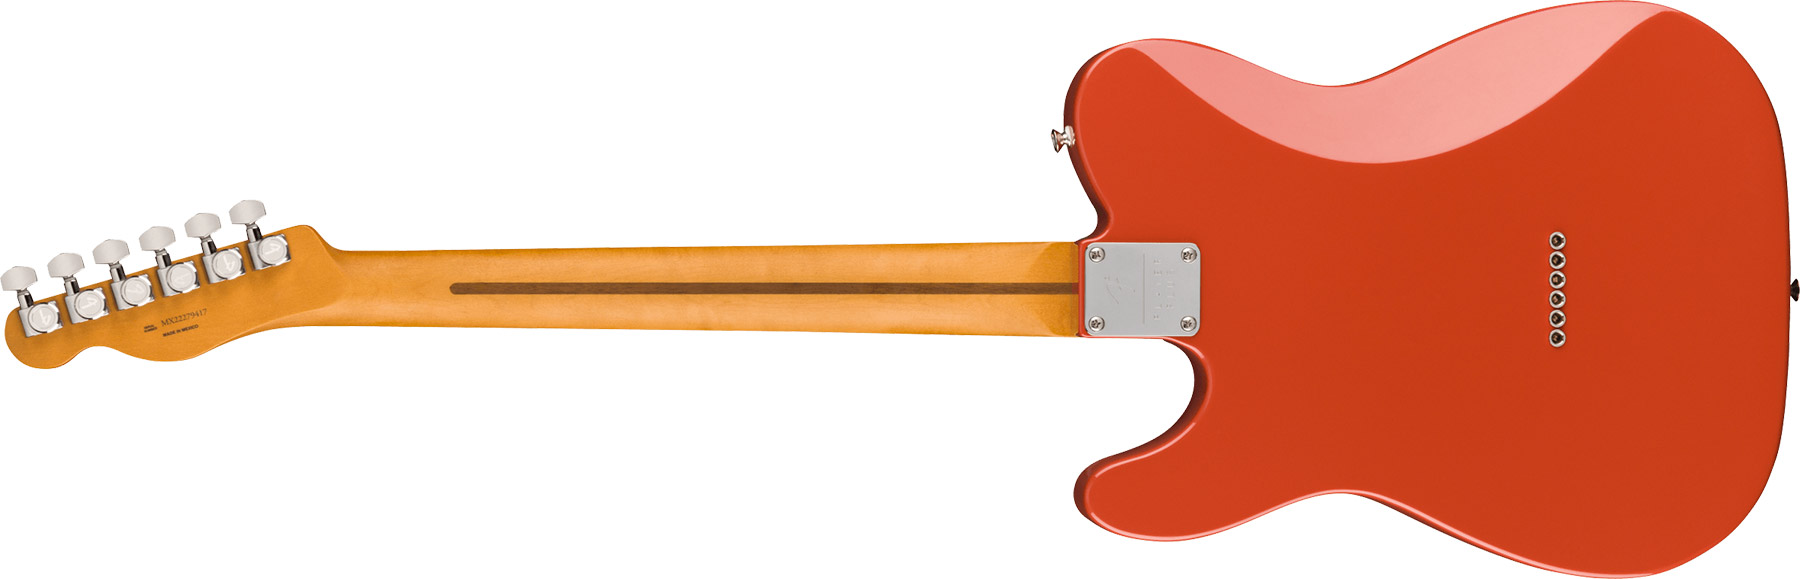 Fender Tele Player Plus Mex 2023 2s Ht Pf - Fiesta Red - Televorm elektrische gitaar - Variation 1